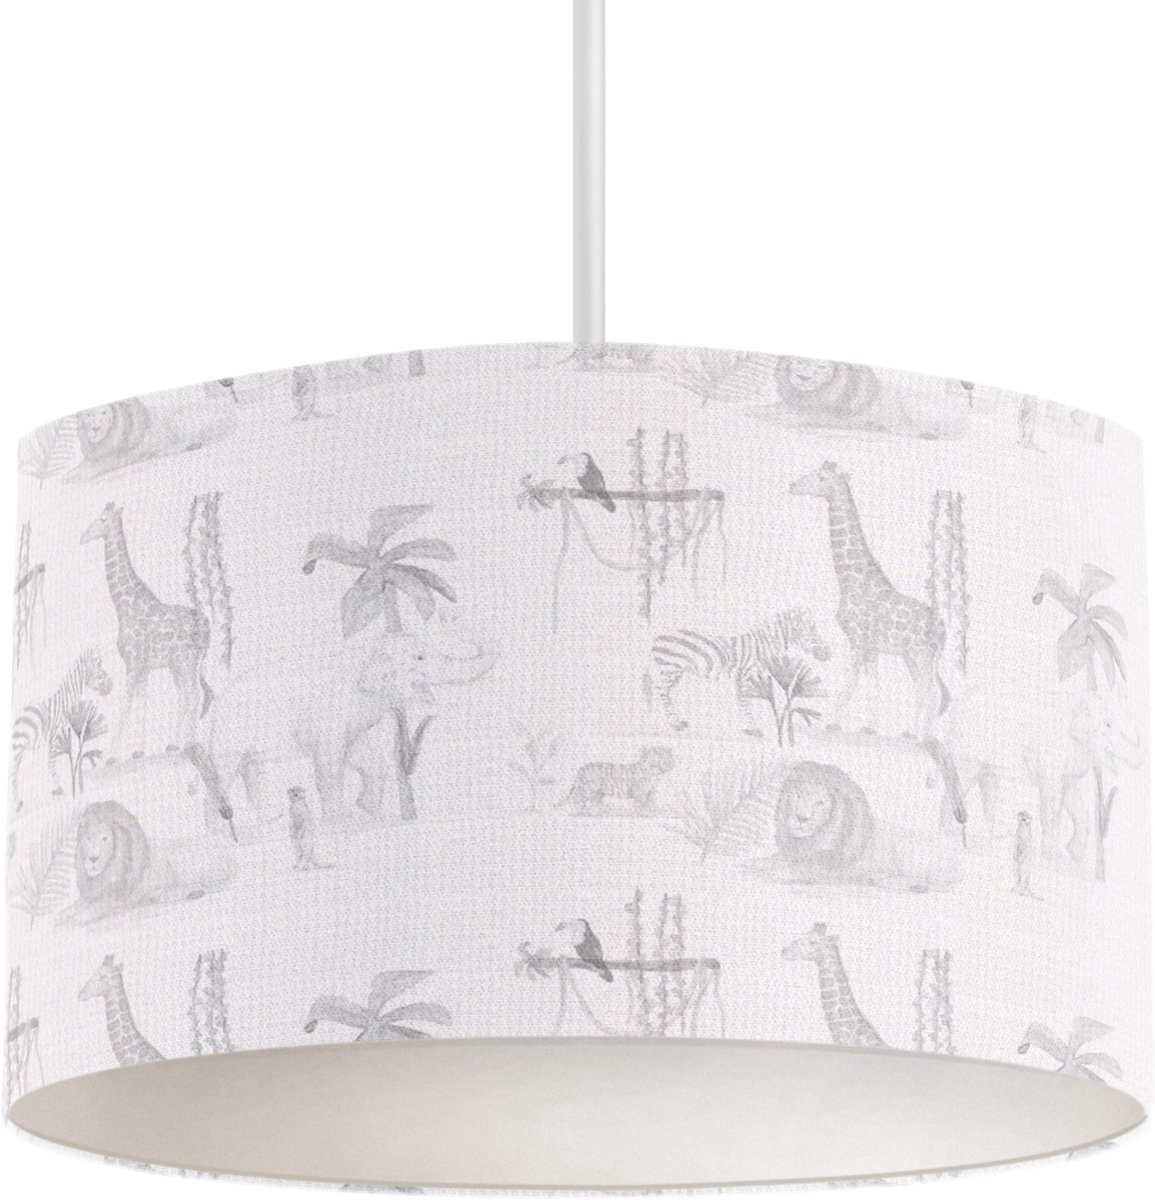 LM Baby Art | Hanglamp Safari dieren grijs | Kinderkamer hanglamp | Inclusief witte pendel | 24cm hoog | Diameter 30cm